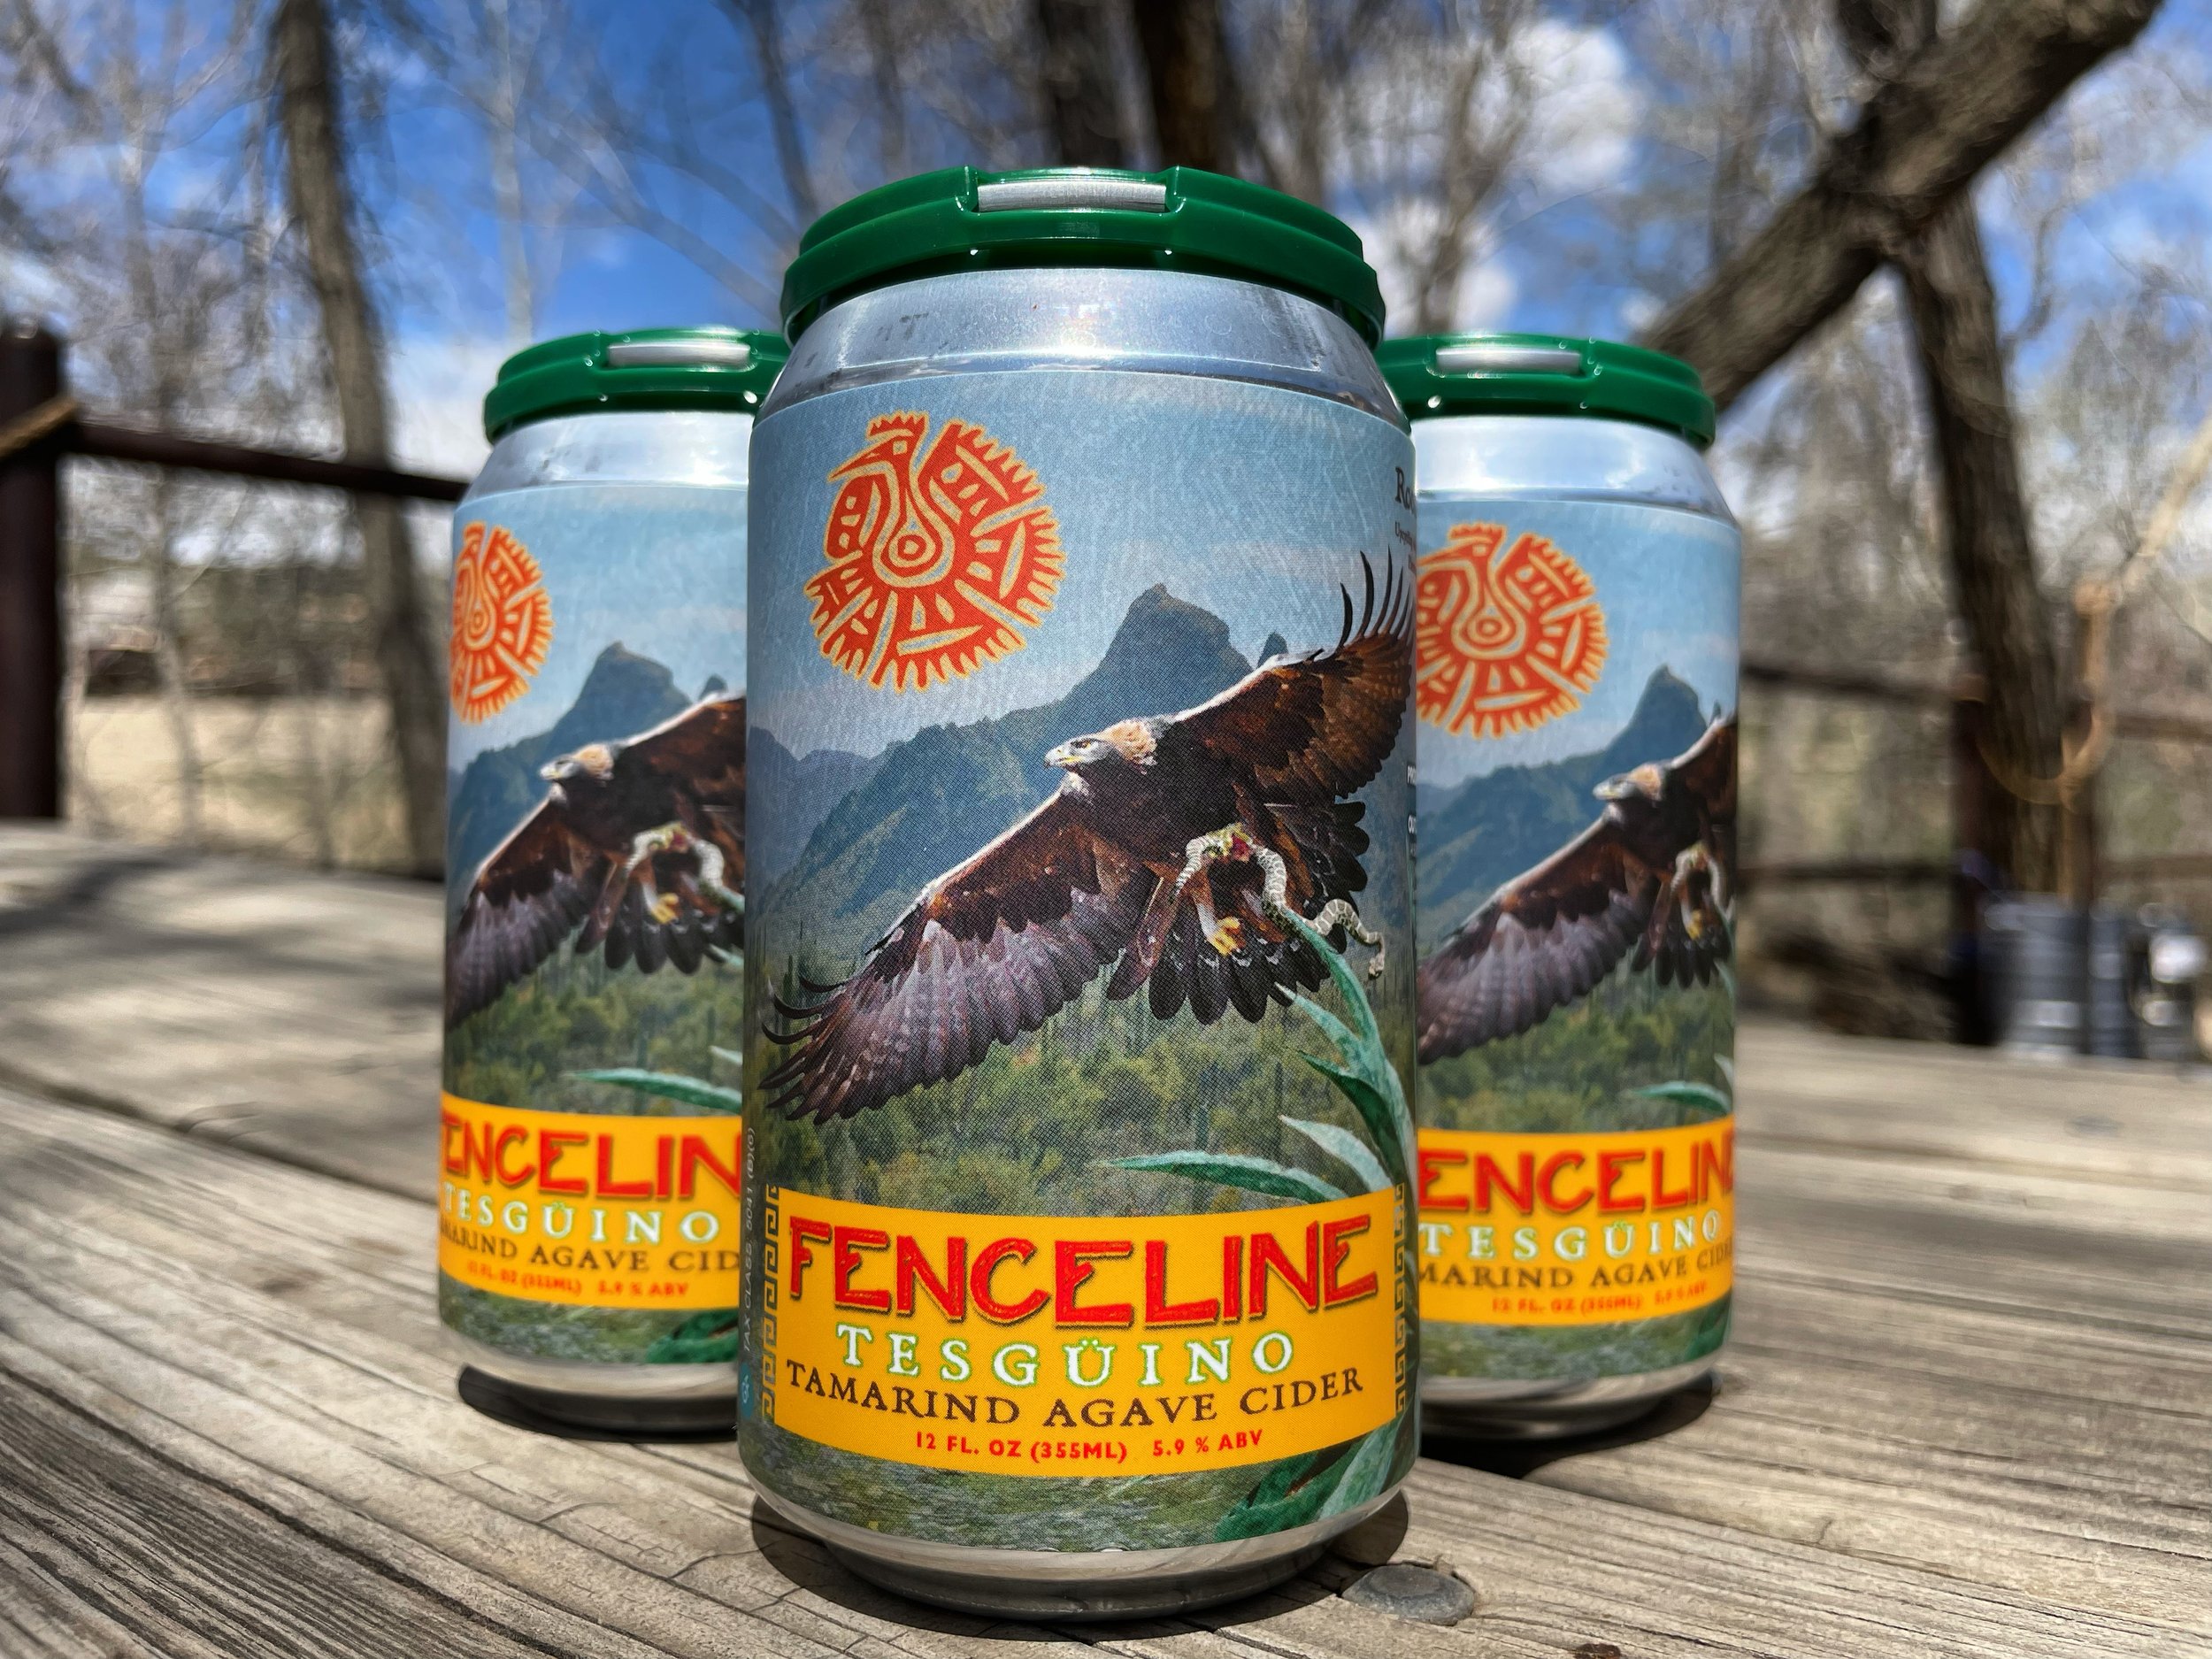 Fenceline Cider’s Seasonal Tesgüino Tamarind Agave Cider Hits Shelves